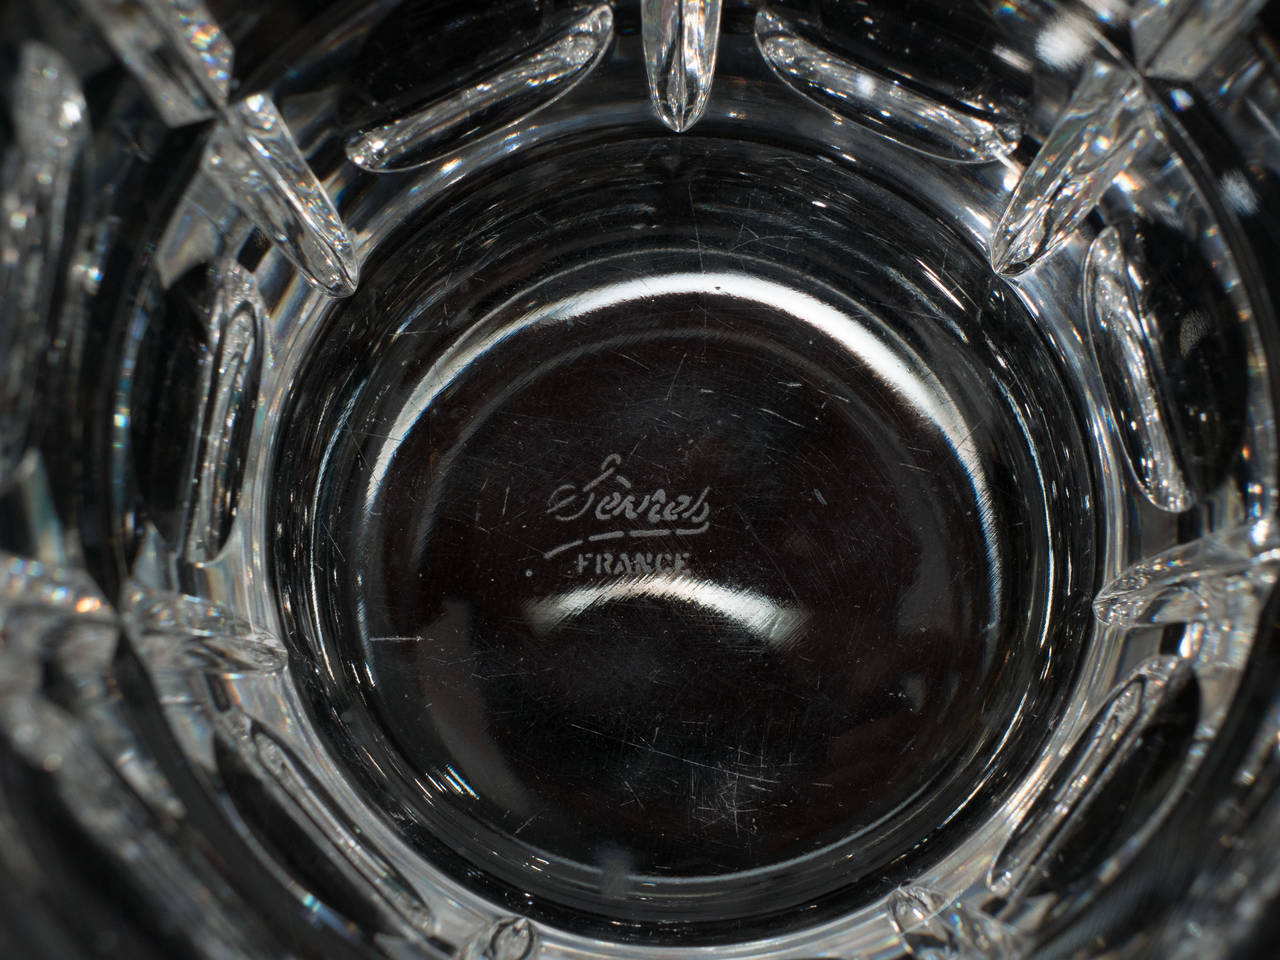 Paire de vases ou seaux à glace en cristal avec motifs circulaires et carrés marqués Sèvres, France sur le fond.

Bon état vintage avec usure appropriée à l'âge. Quelques rayures.